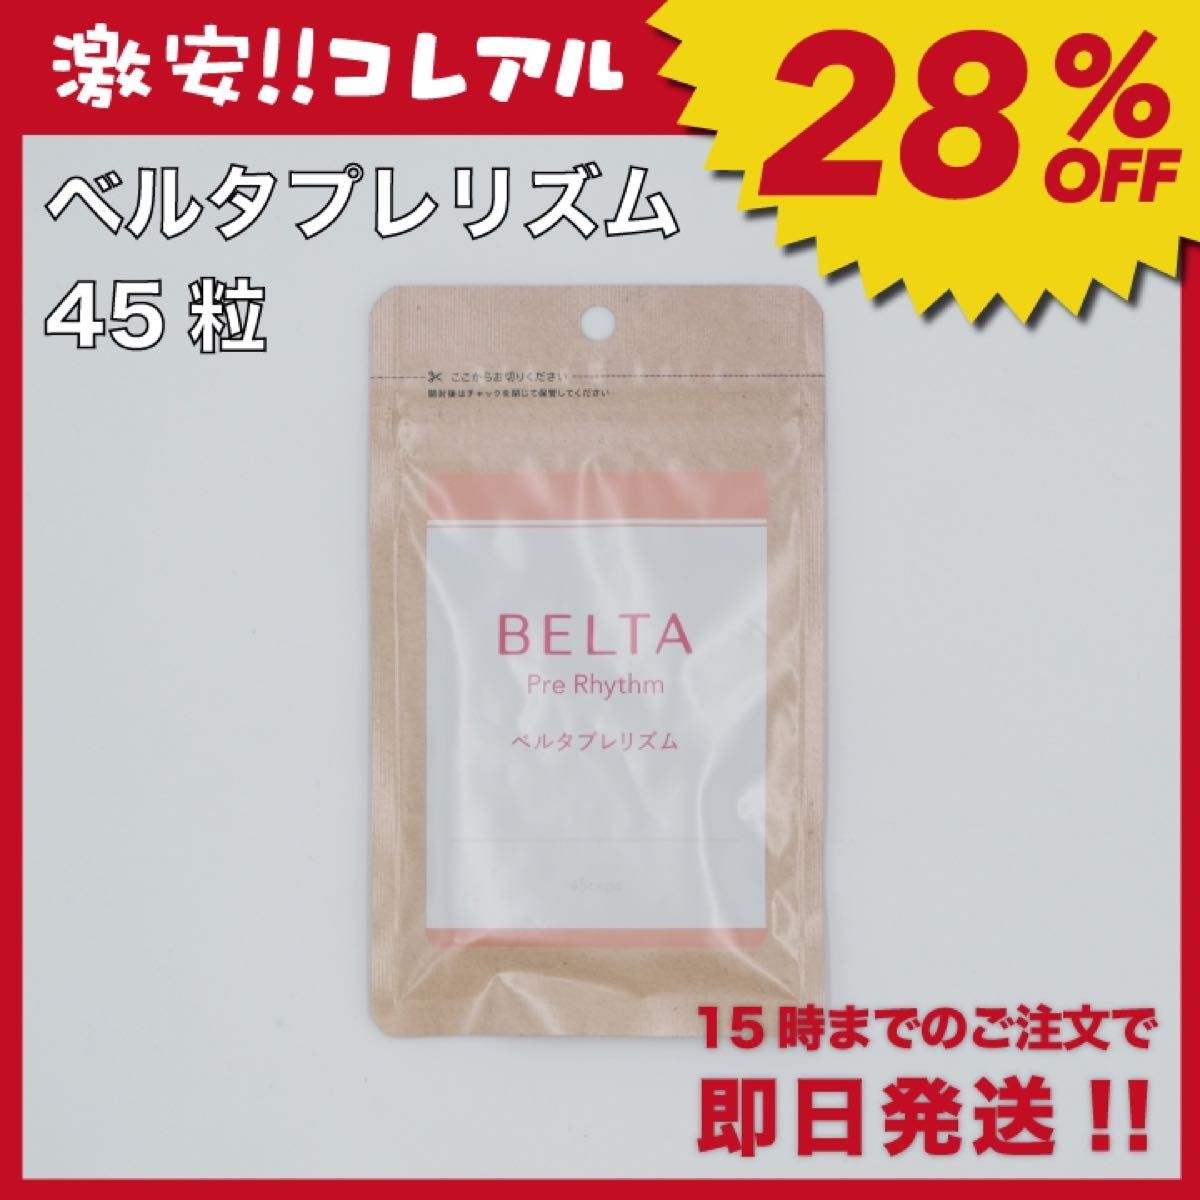 【新品】BELTA ベルタプレリズム 45粒 妊活 葉酸